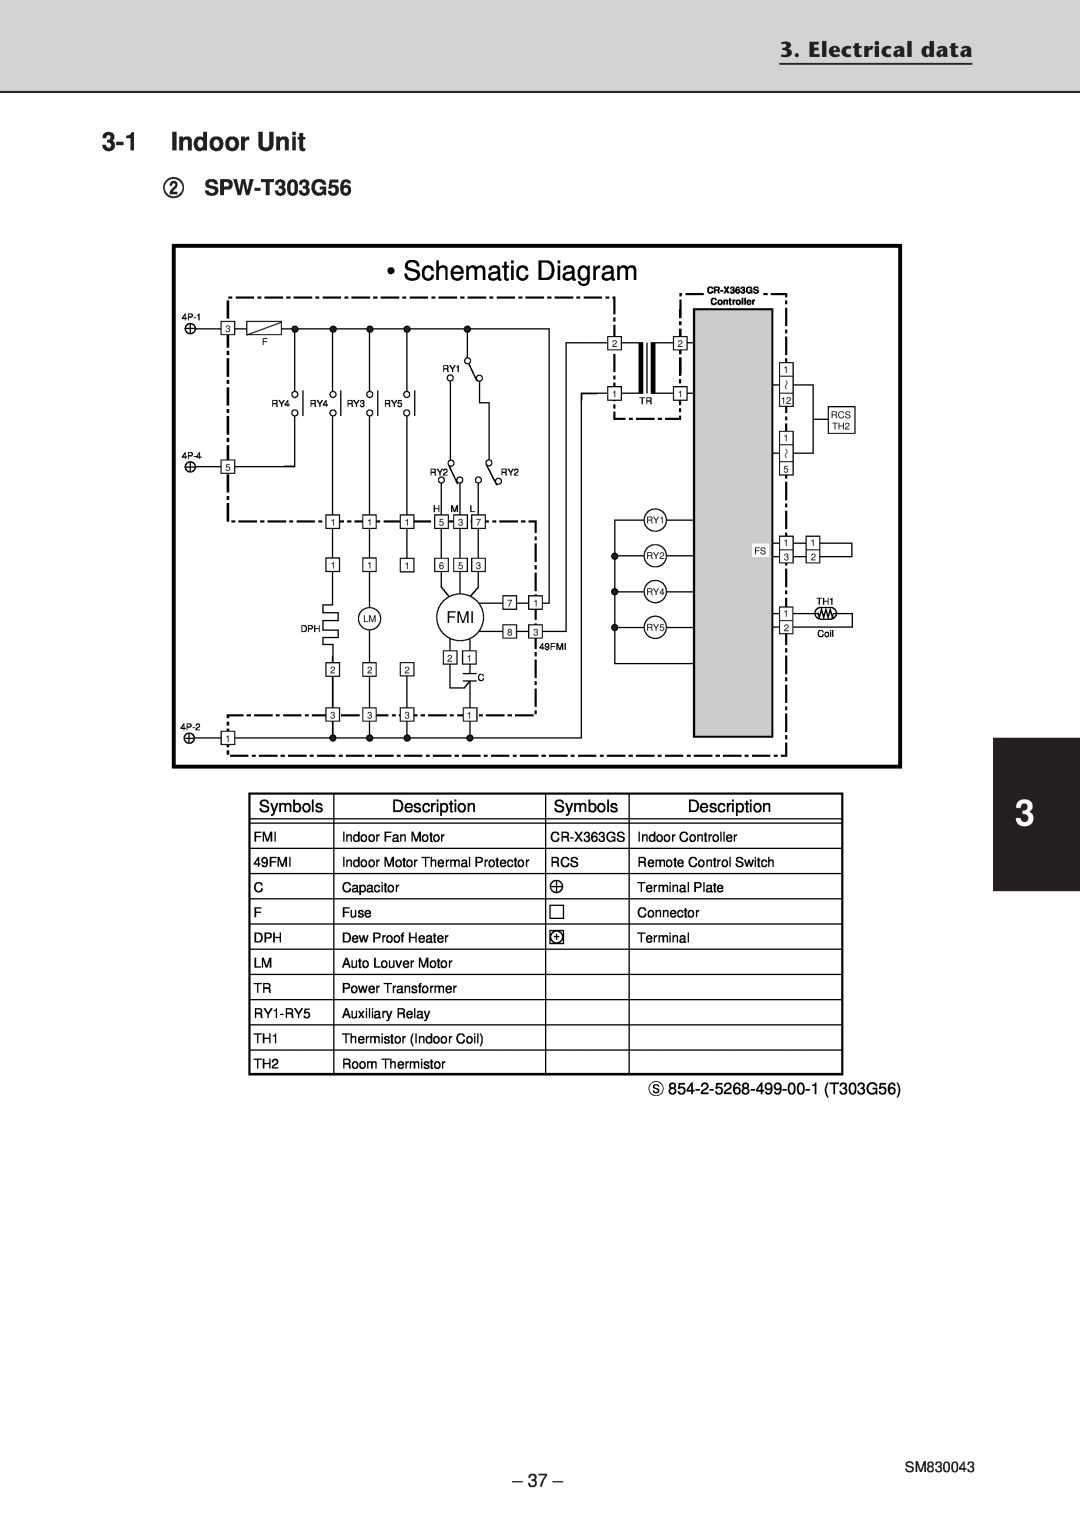 Sanyo SPW-T483G56, SPW-T363GS56, SPW-T483GS56, SPW-C363G8, SPW-T363G56 Schematic Diagram, 3-1Indoor Unit, Electrical data 